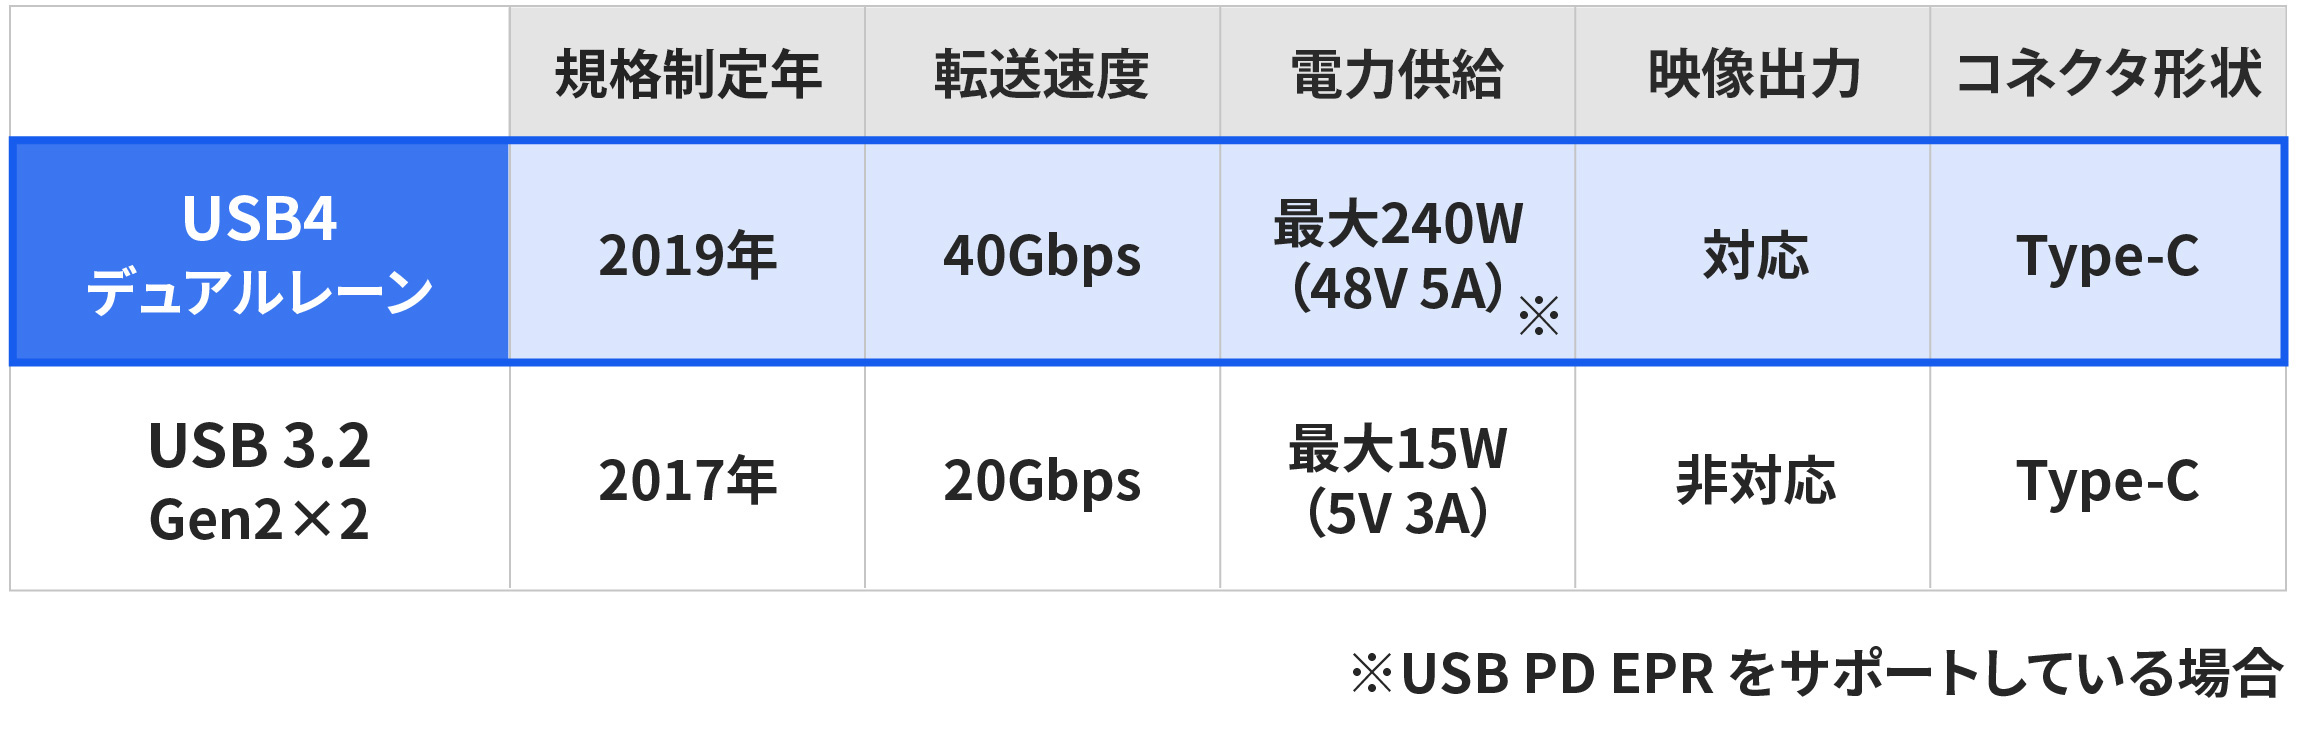 「USB4」と「USB 3.2」の違い